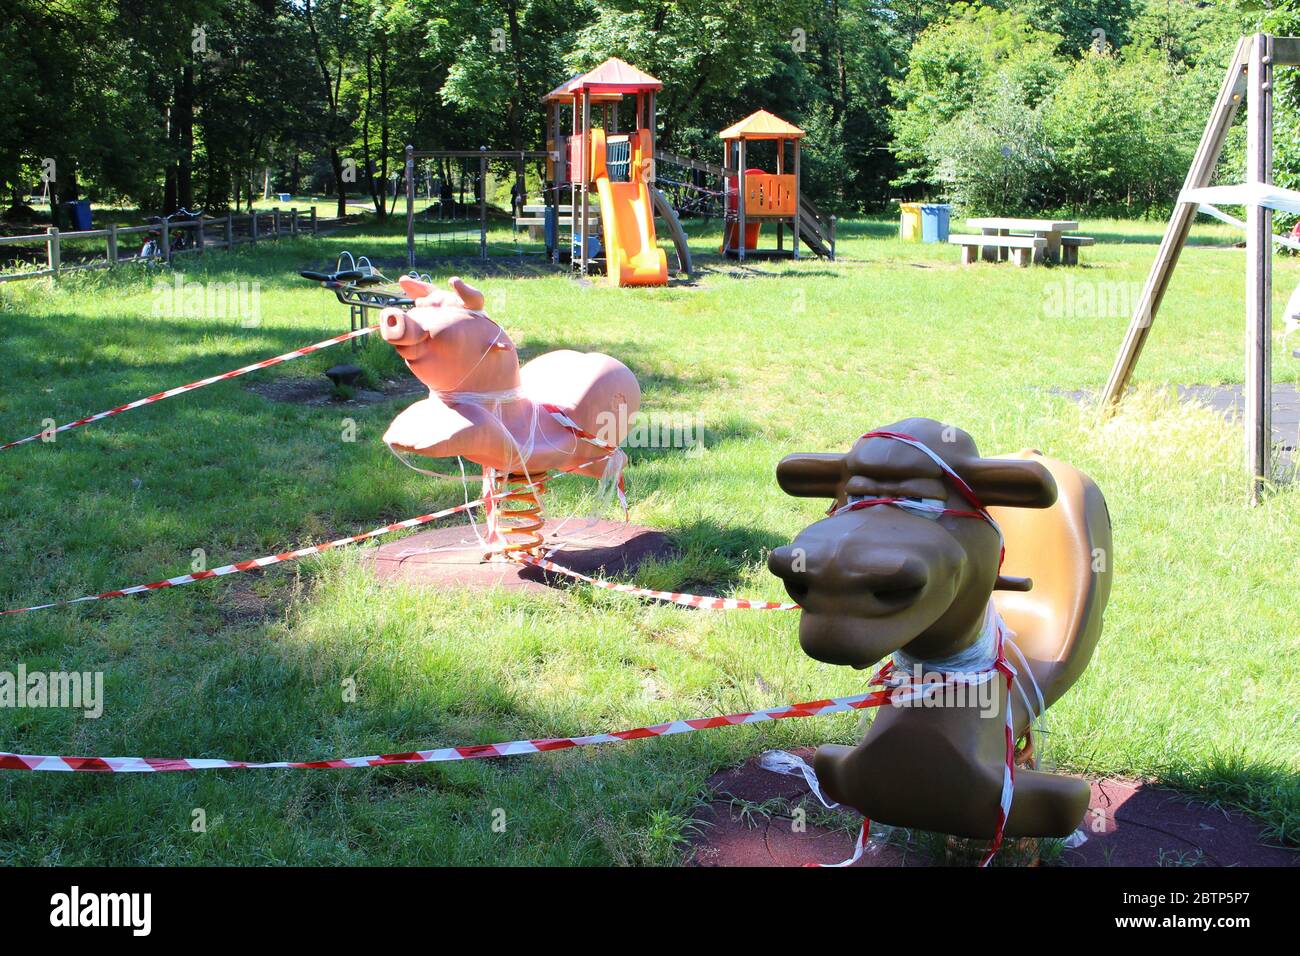 Busto Arsizio, Varese / Italia - 05 27 2020: Il parco giochi per bambini in Italia, chiuso a causa del virus Covid-19. Isolato con nastro bianco e rosso. Foto Stock